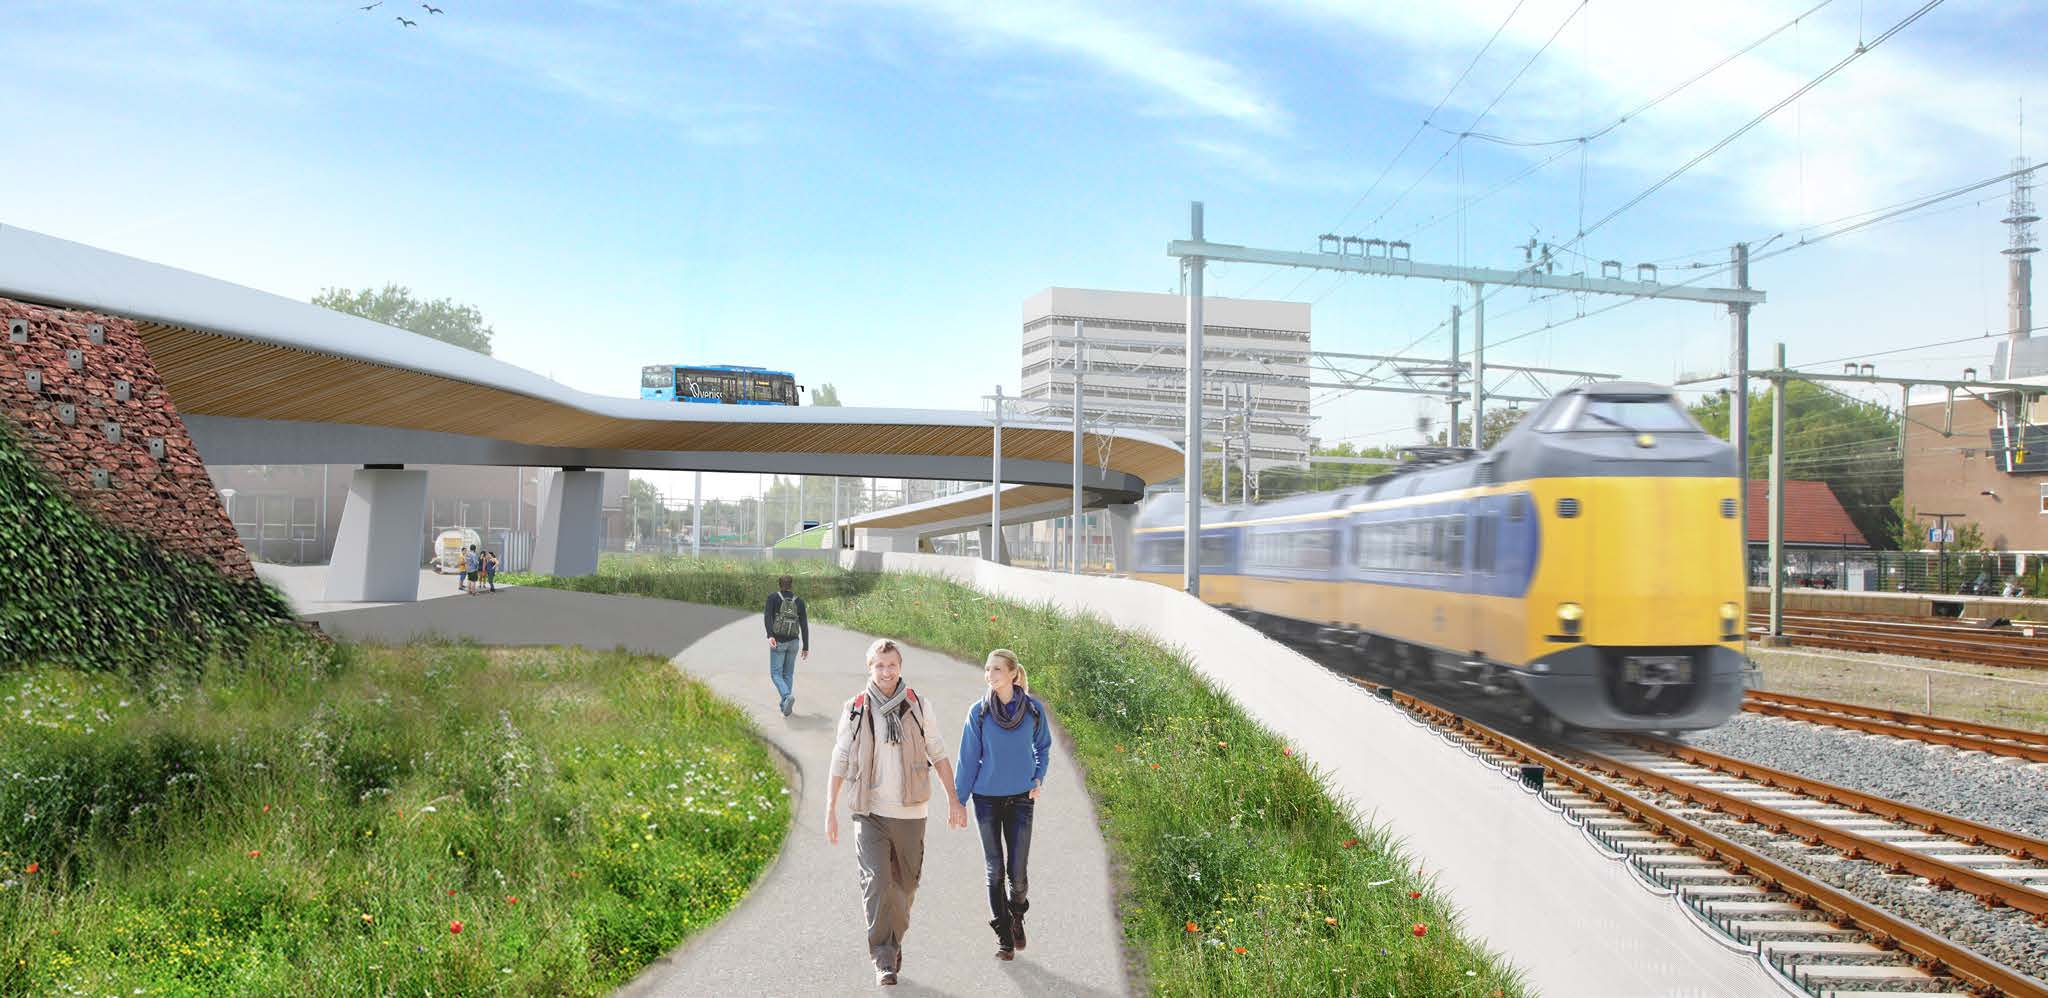 Spoorzone Zwolle nieuwsbrief 16 - februari 2017 Blijf op de hoogte van ontwikkelingen in het stationsgebied.